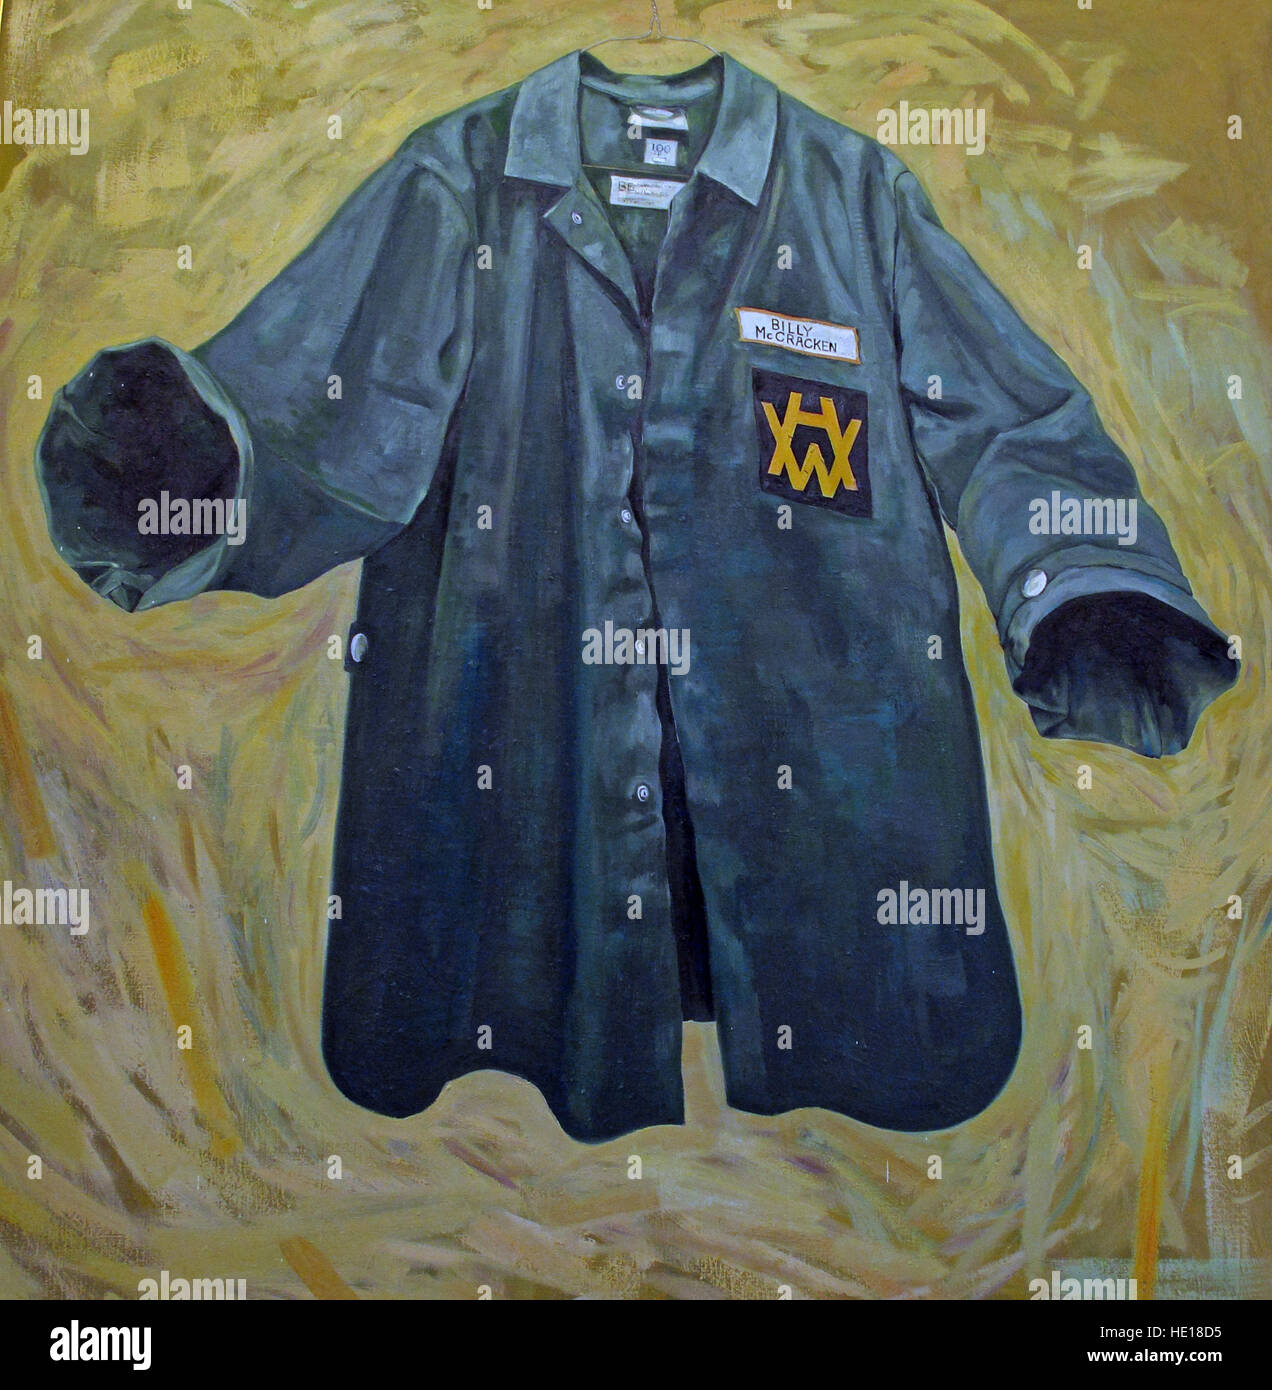 Harland & Wolff blue shirt, Billy McCracken - Marine Sales Manager artwork, Belfast, Northern Ireland, UK Stock Photo